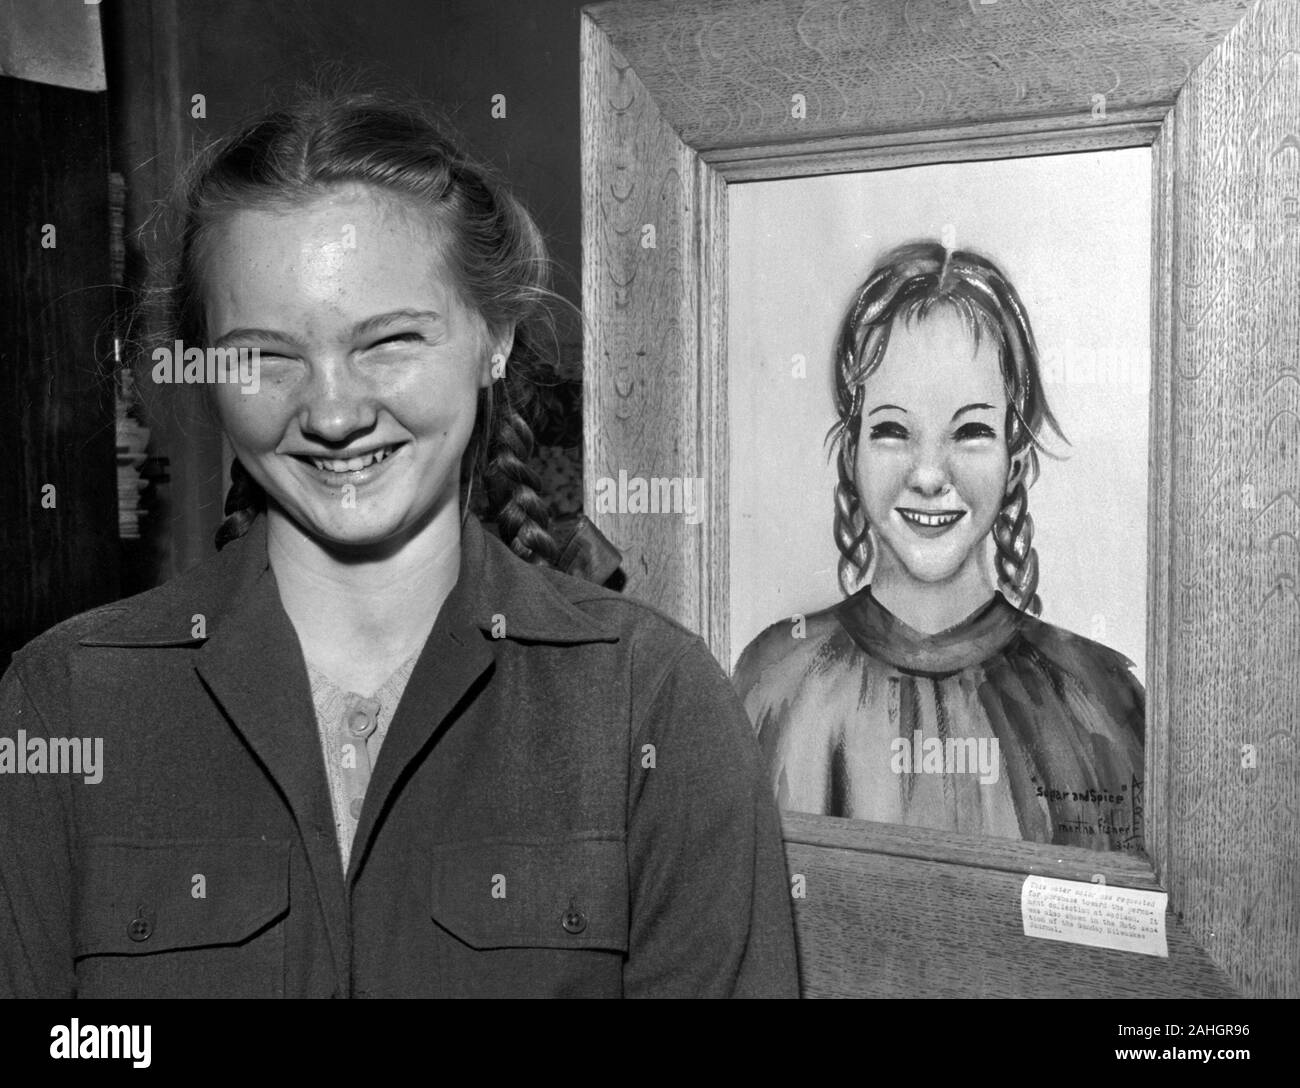 Una ragazza nel 1946 in posa con un ritratto di lei, da Martha Fisher. Il ritratto è stato inserito in un concorso artistico in Madison Wisconsin nel marzo 1946. Foto Stock